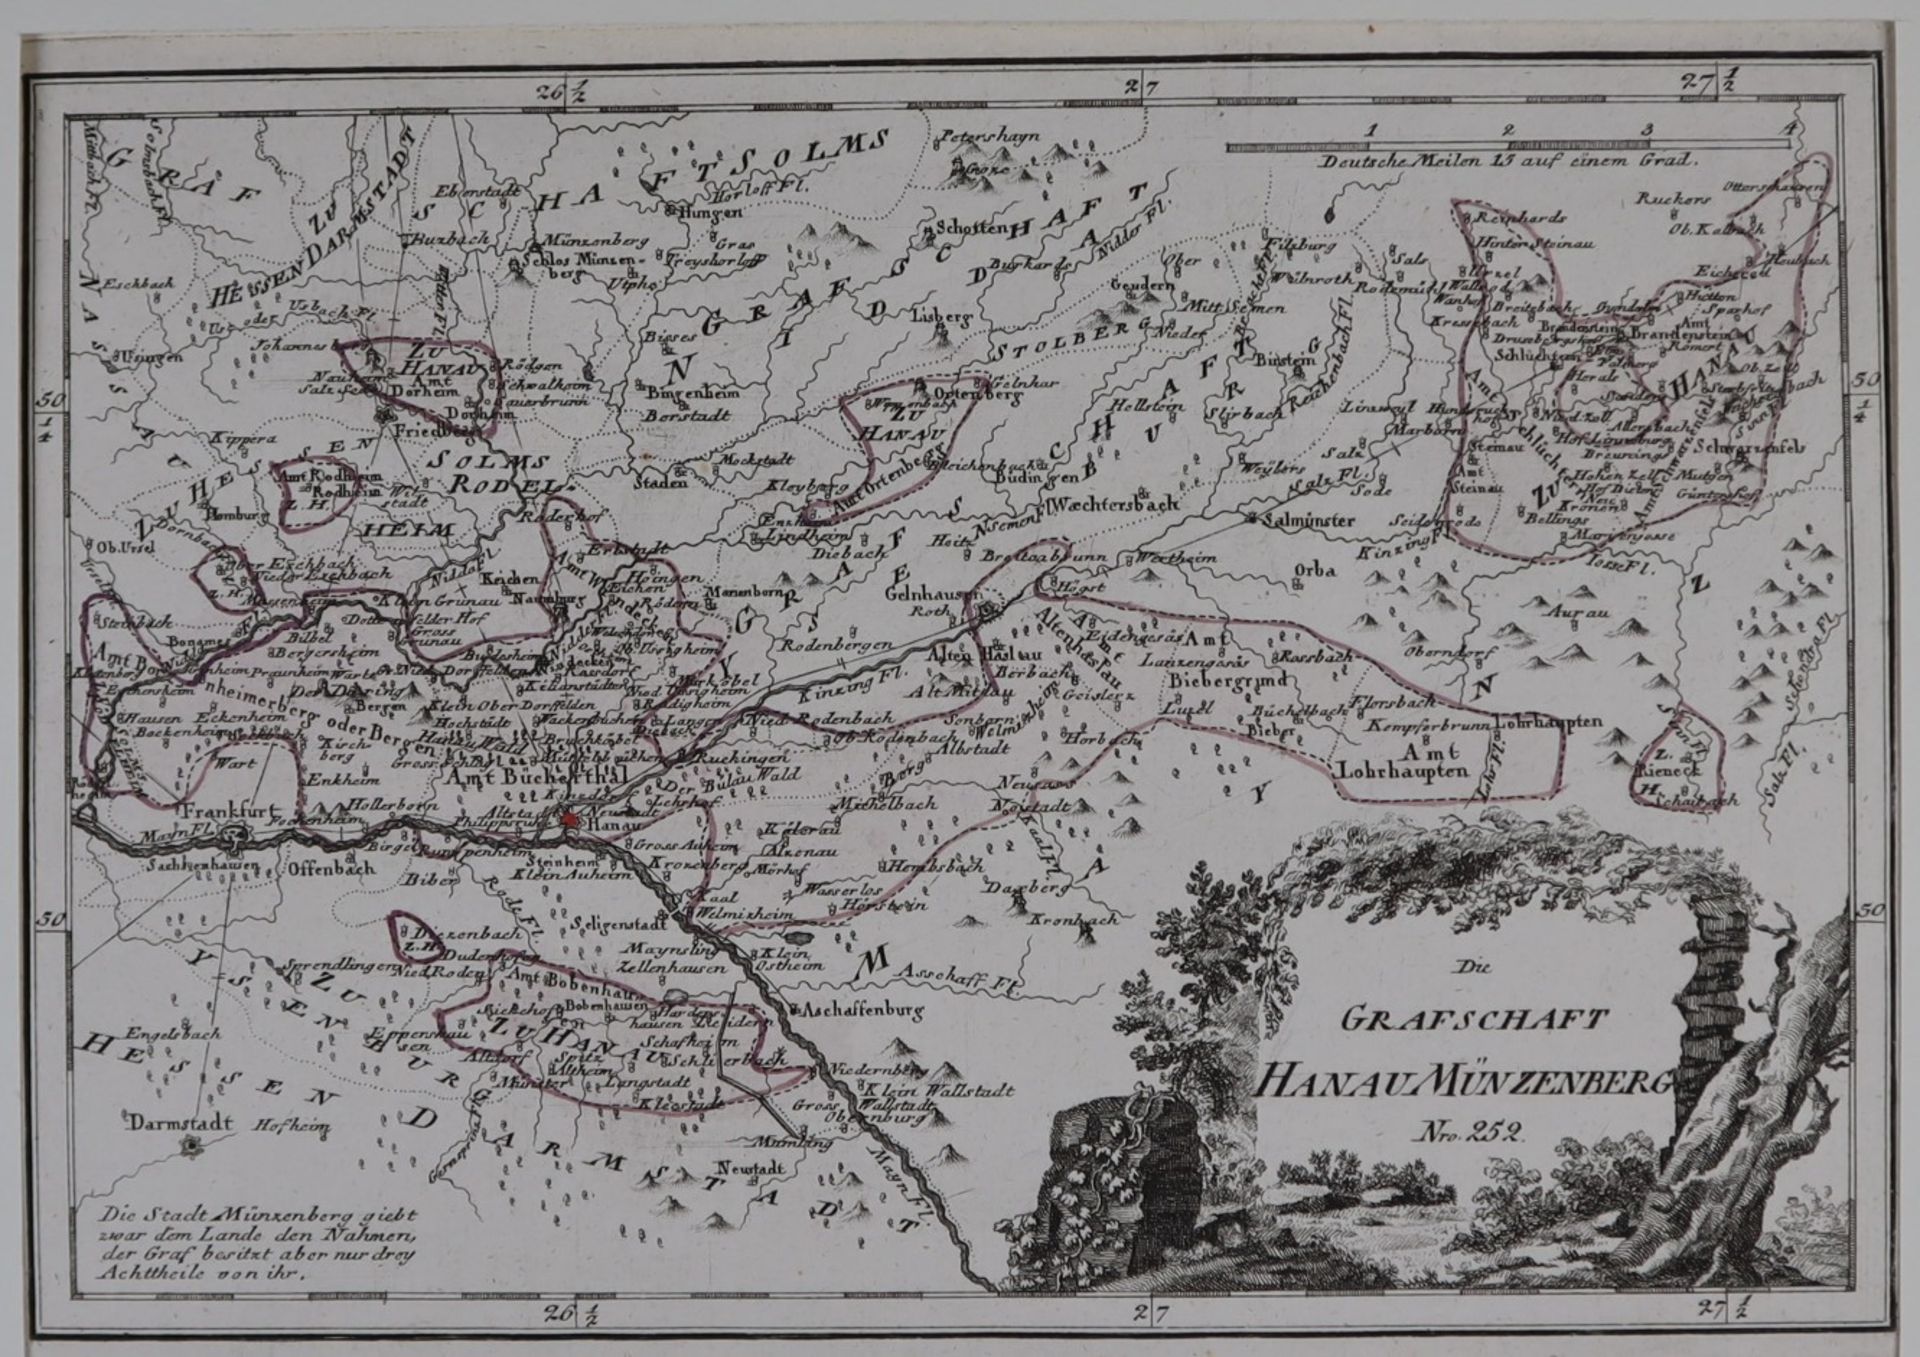 Reilly, Franz Johann Joseph - Kupferstichkarte "Die Grafschaft Hanau Münzenberg